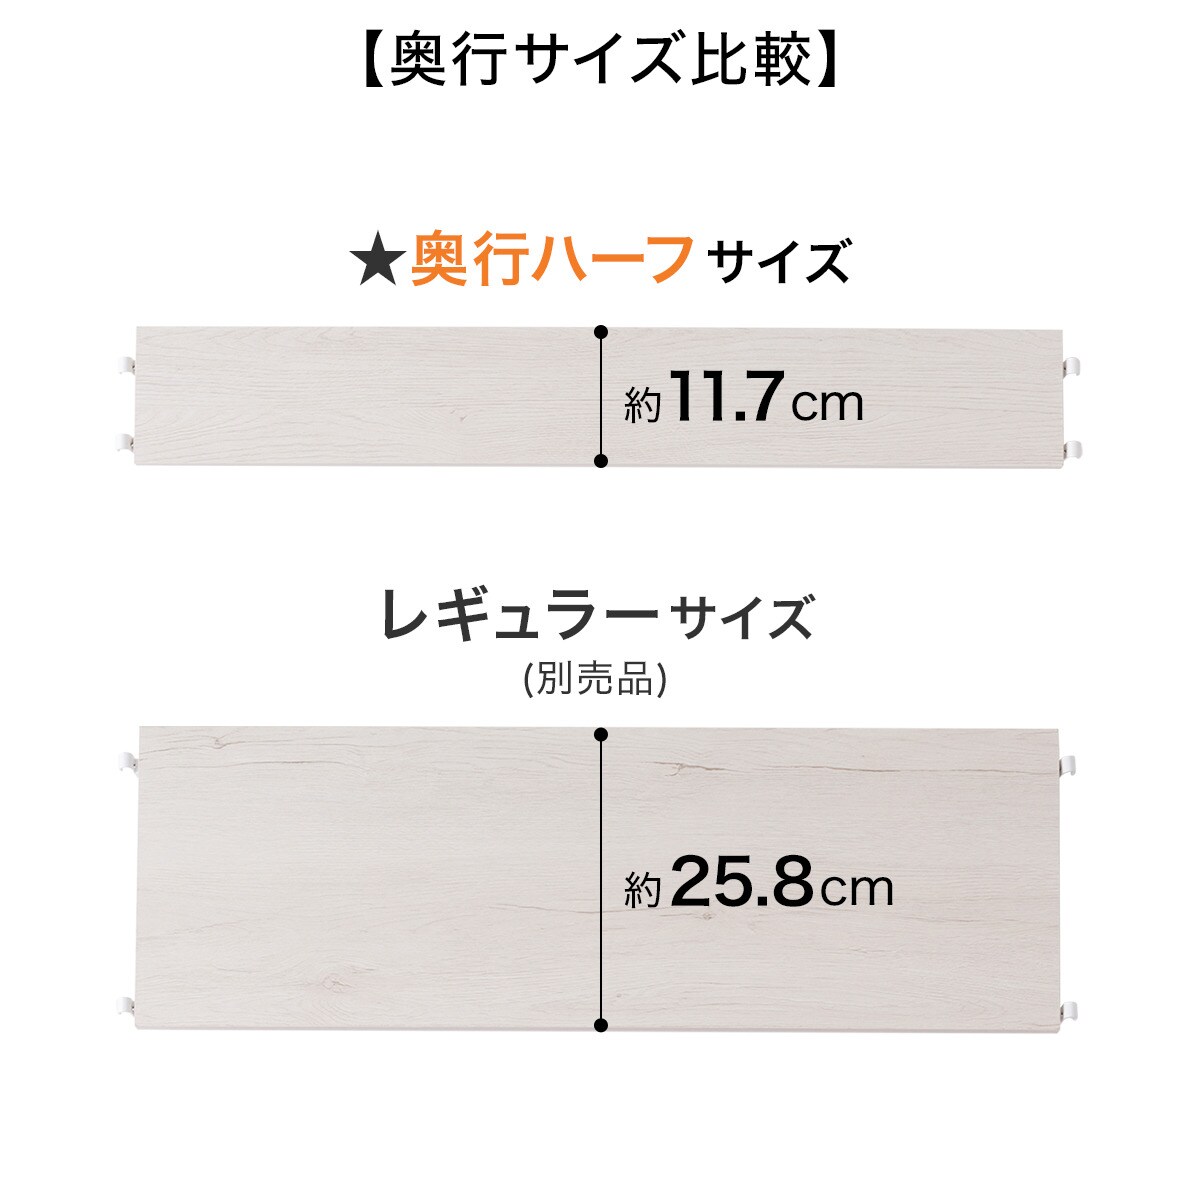 【Nポルダ専用】追加棚板 奥行ハーフ(幅80cm用)